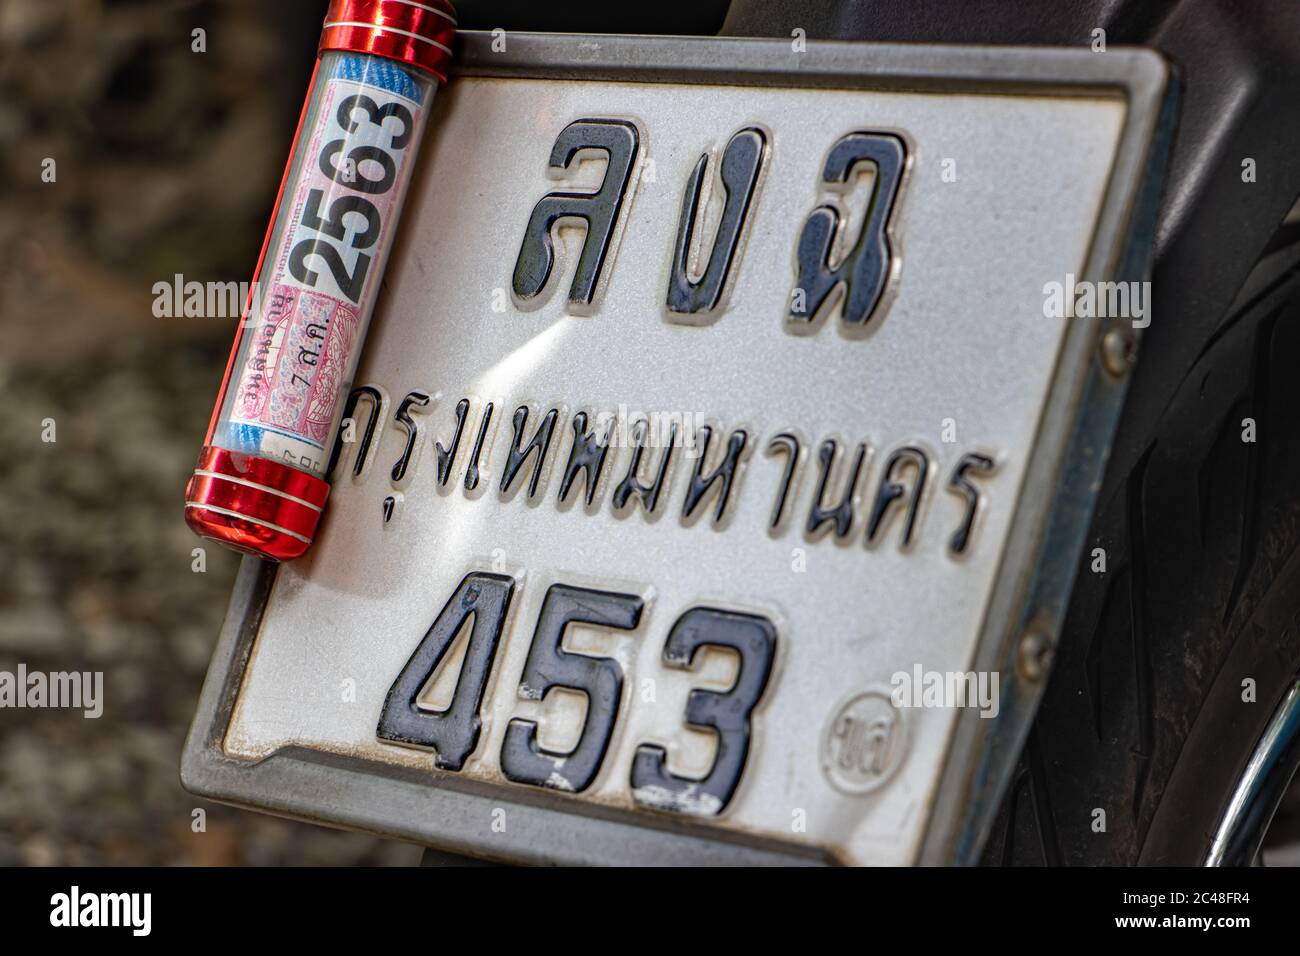 SAMUT PRAKAN, THAILANDIA, 23 2020 GIUGNO, Conferma dell'assicurazione nella scatola di acciaio fissata alla targa del veicolo - moto. Foto Stock